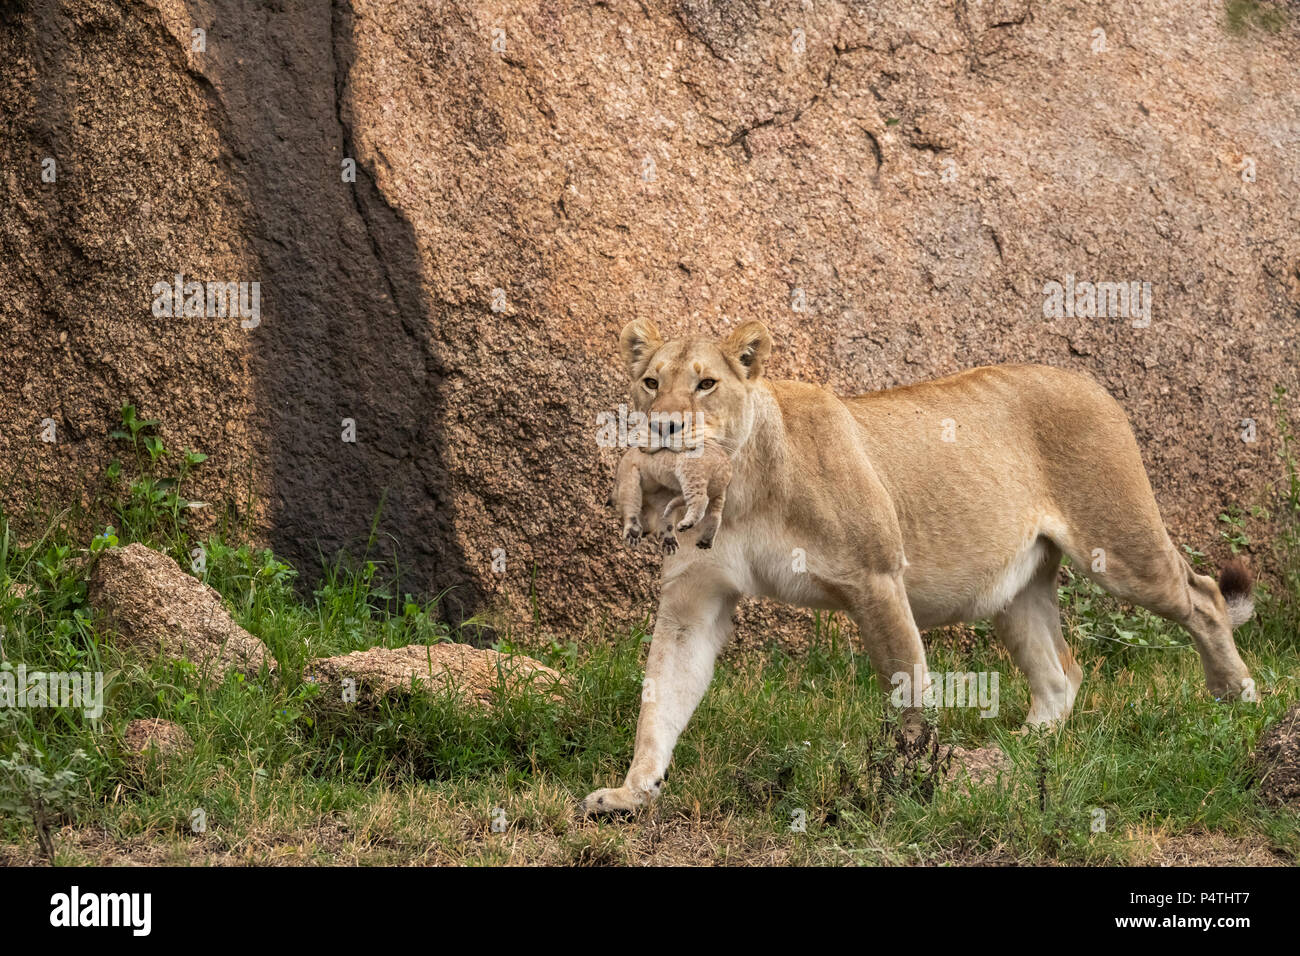 L'African Lion lionne (Panthera leo) transportant son très jeune cub dans sa bouche dans le Parc National du Serengeti, Tanzanie Banque D'Images